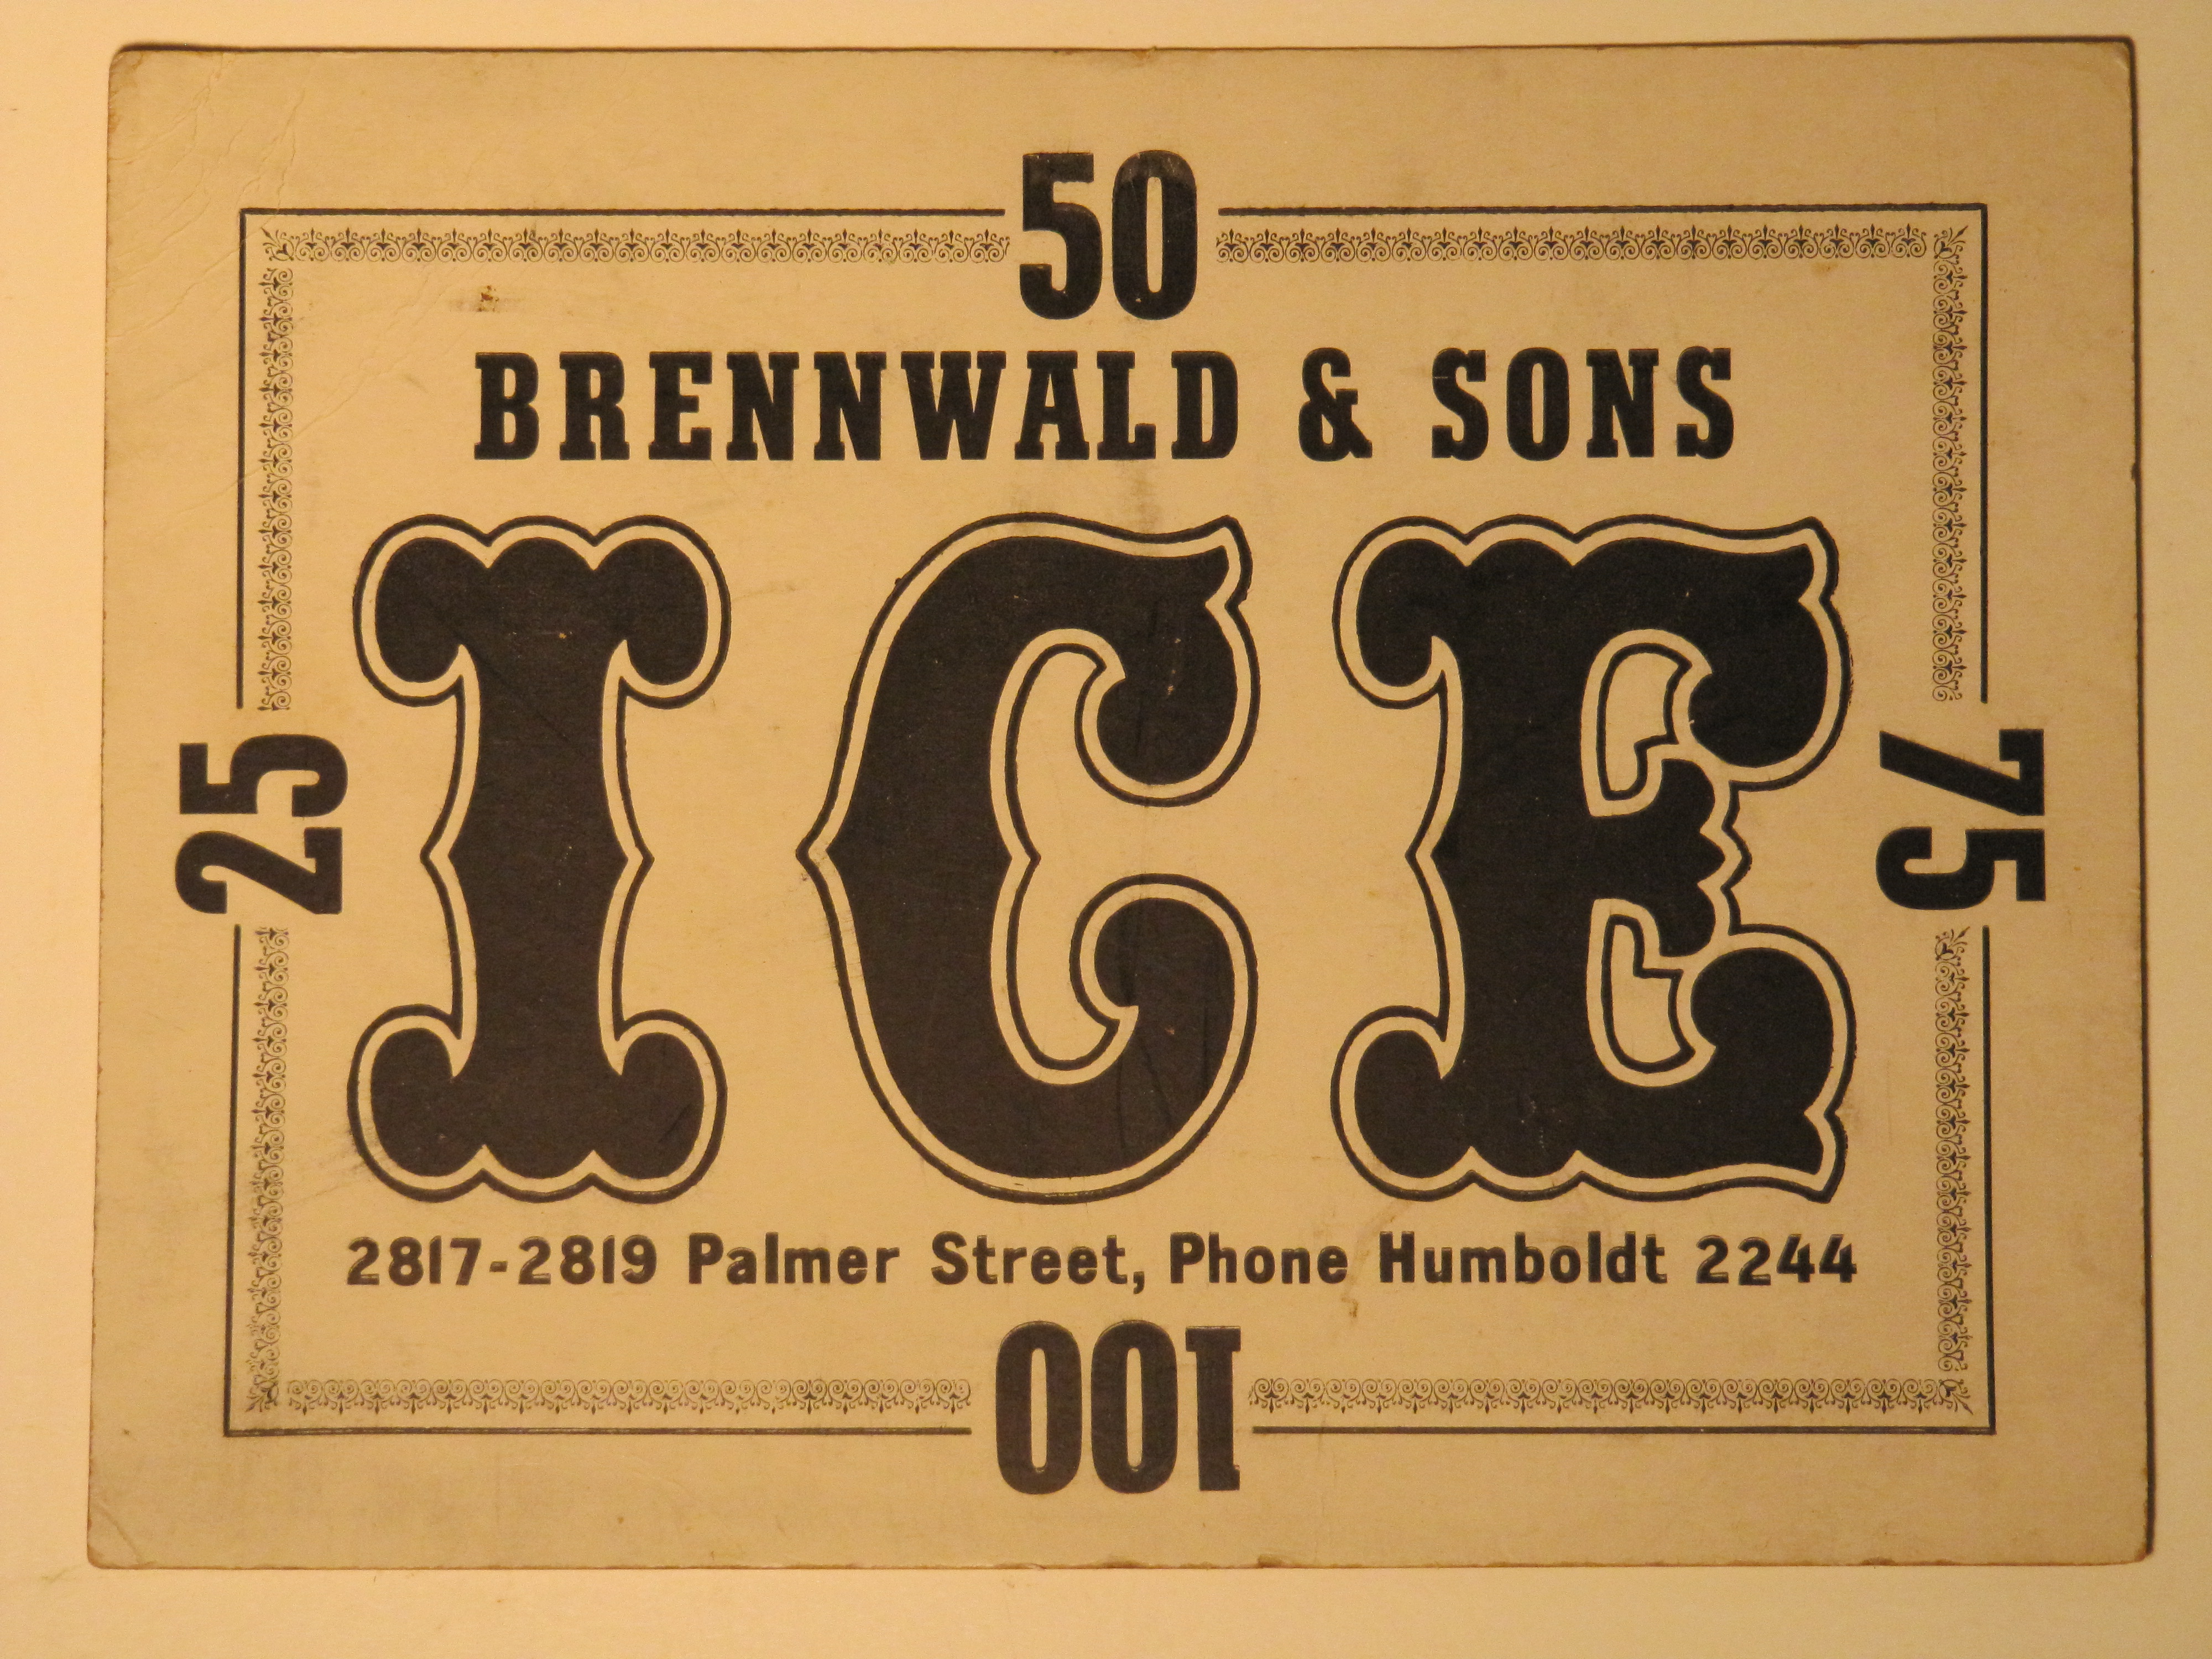 Brennwald & Sons